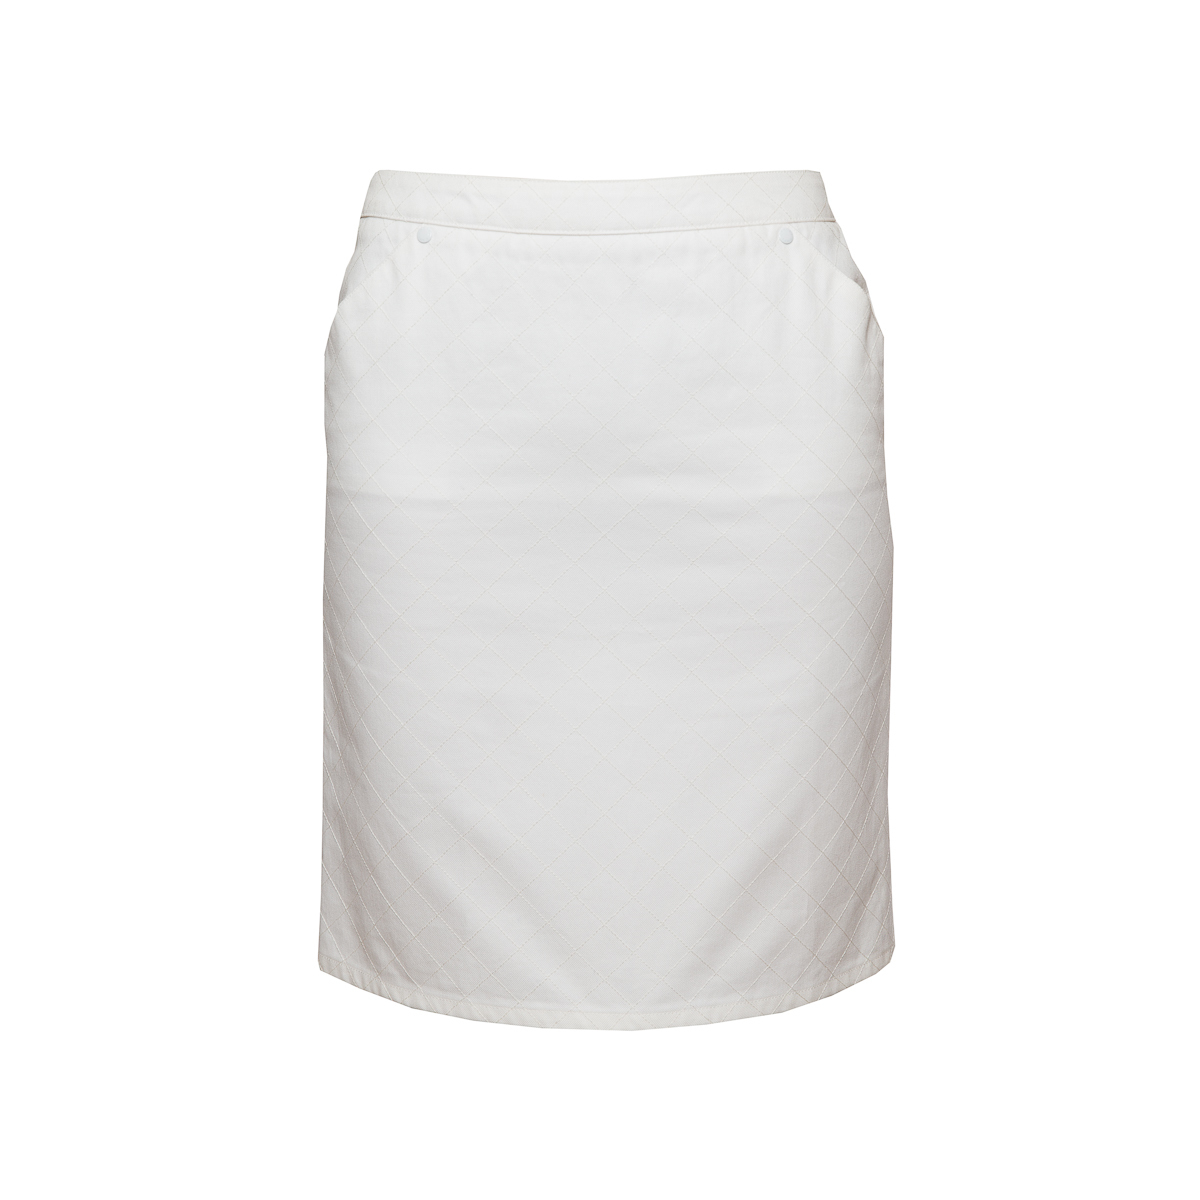 Стильная юбка из хлопка белого цвета от Chanel, 38 размер.